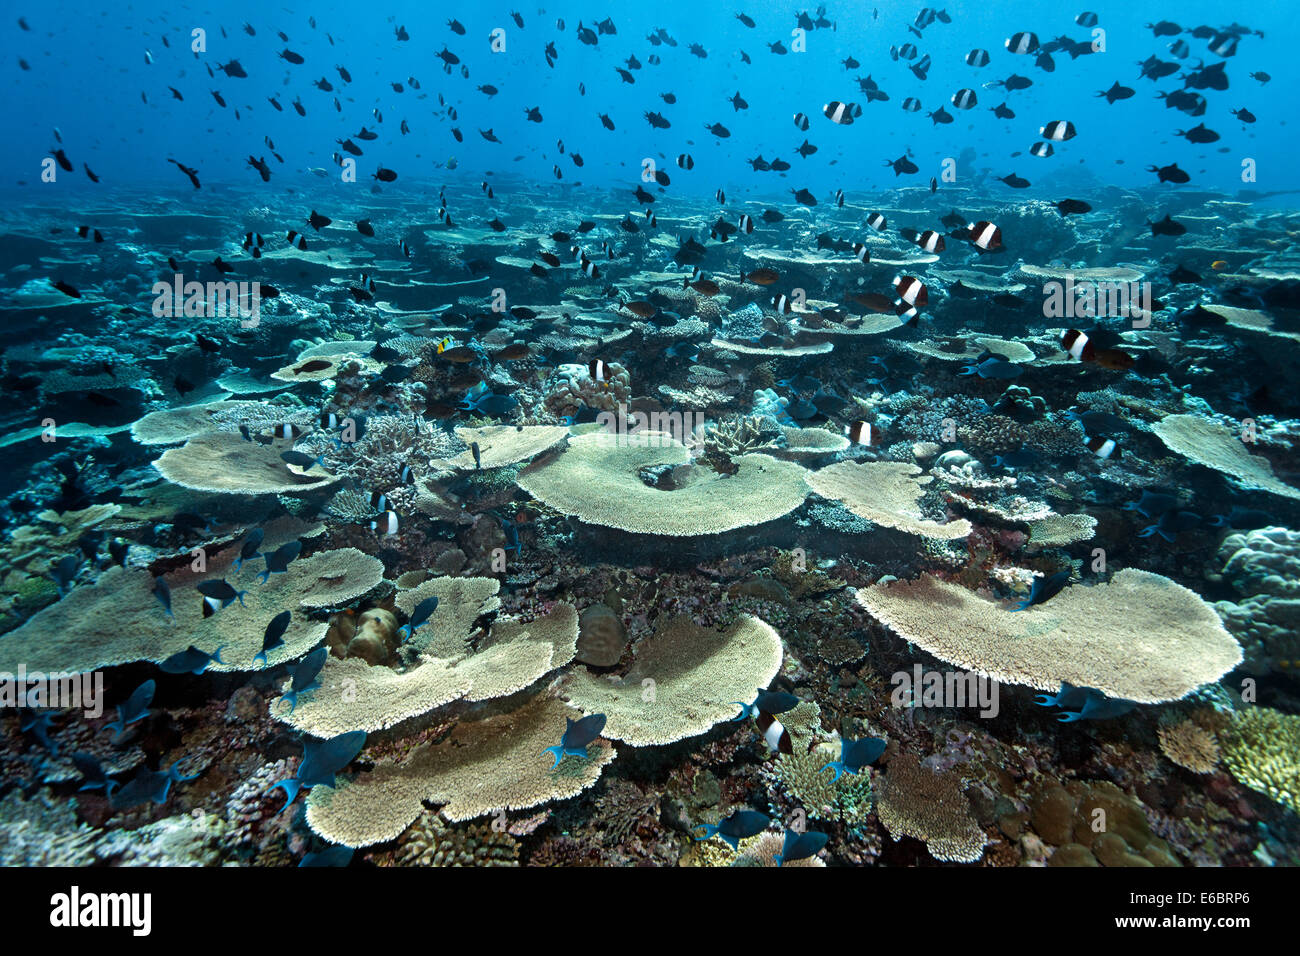 Acropora avec platier de corail Acropora hyacinthus (table) et de nombreux poissons de récif, divers, de l'Océan Indien, Filitheyo Banque D'Images